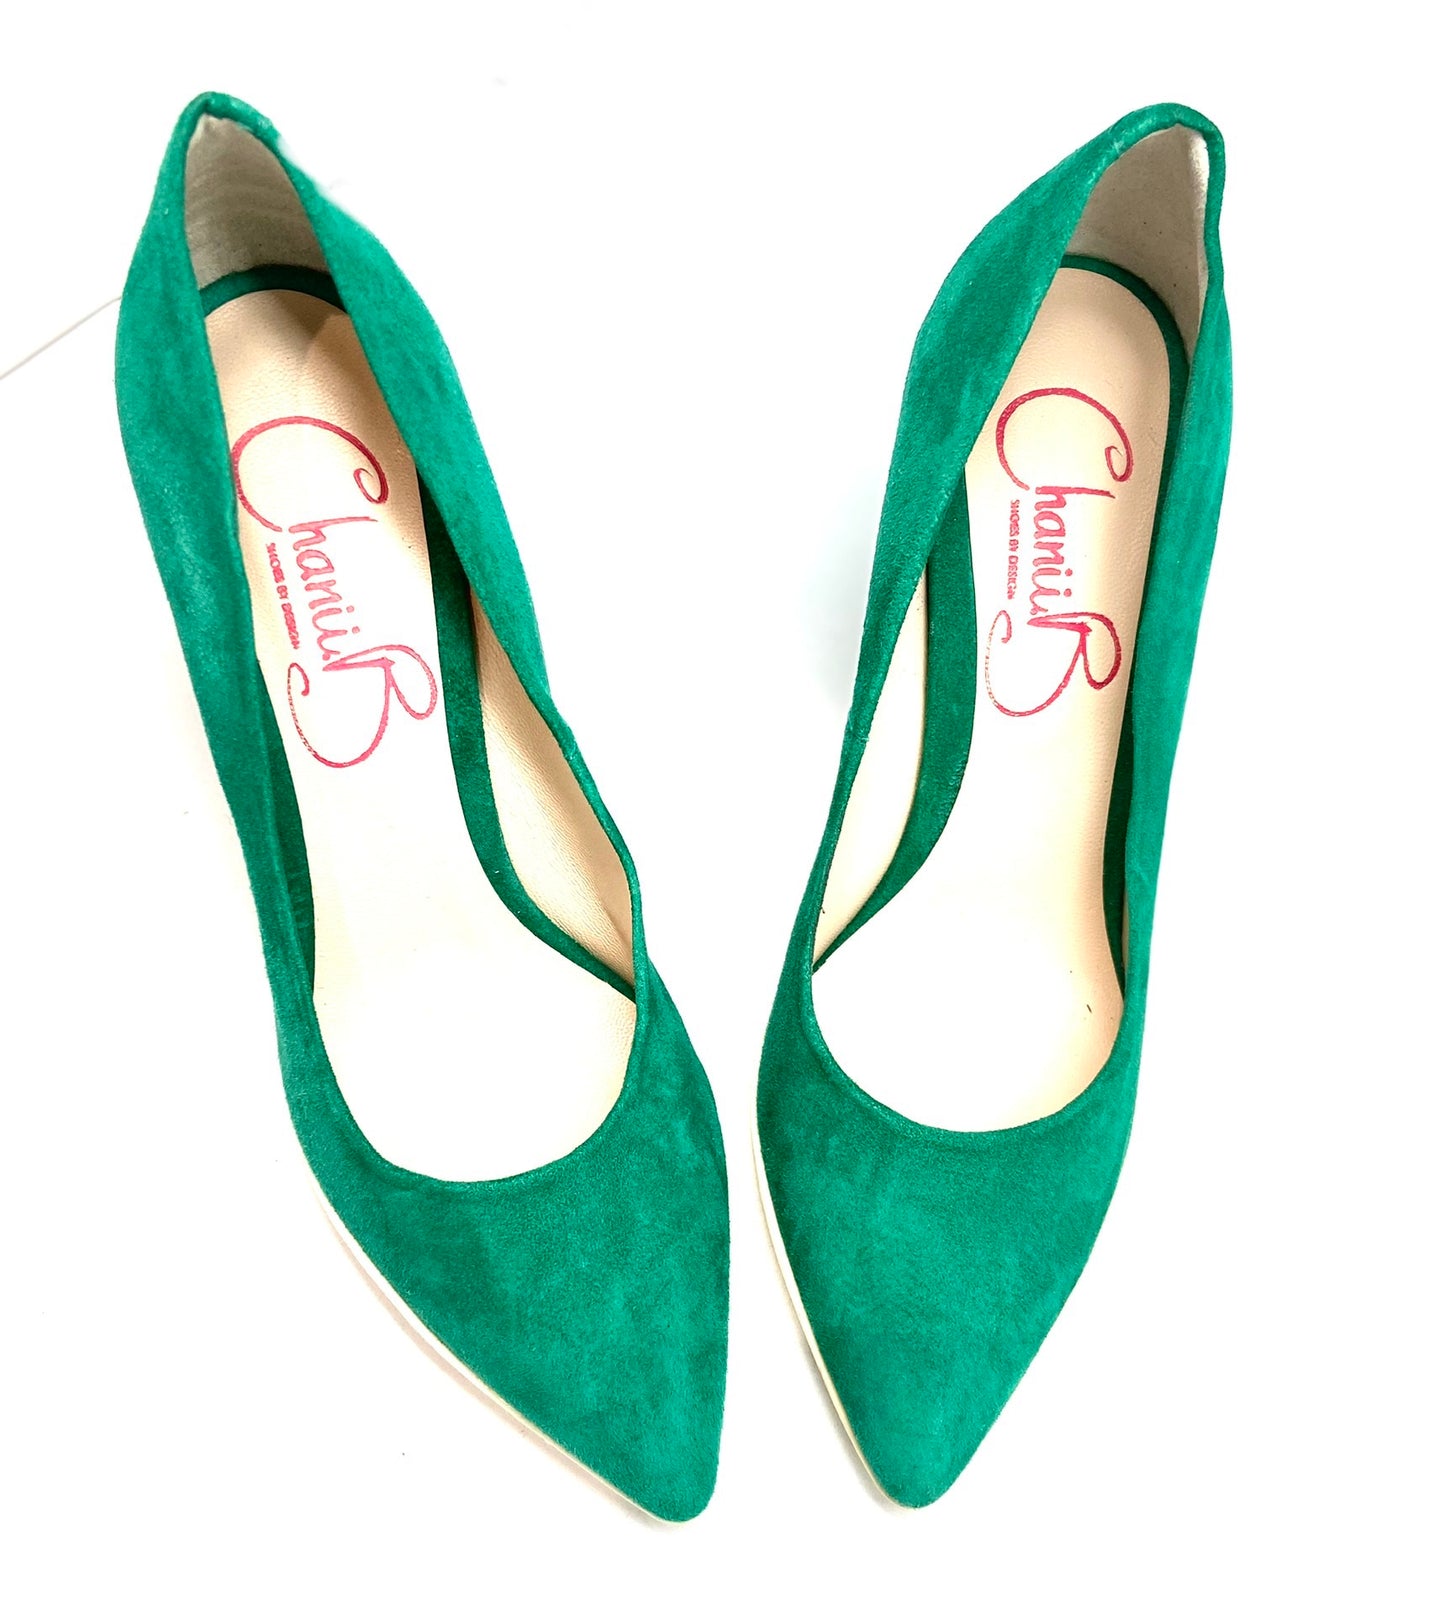 Pailette - Kelly Green high heel shoe